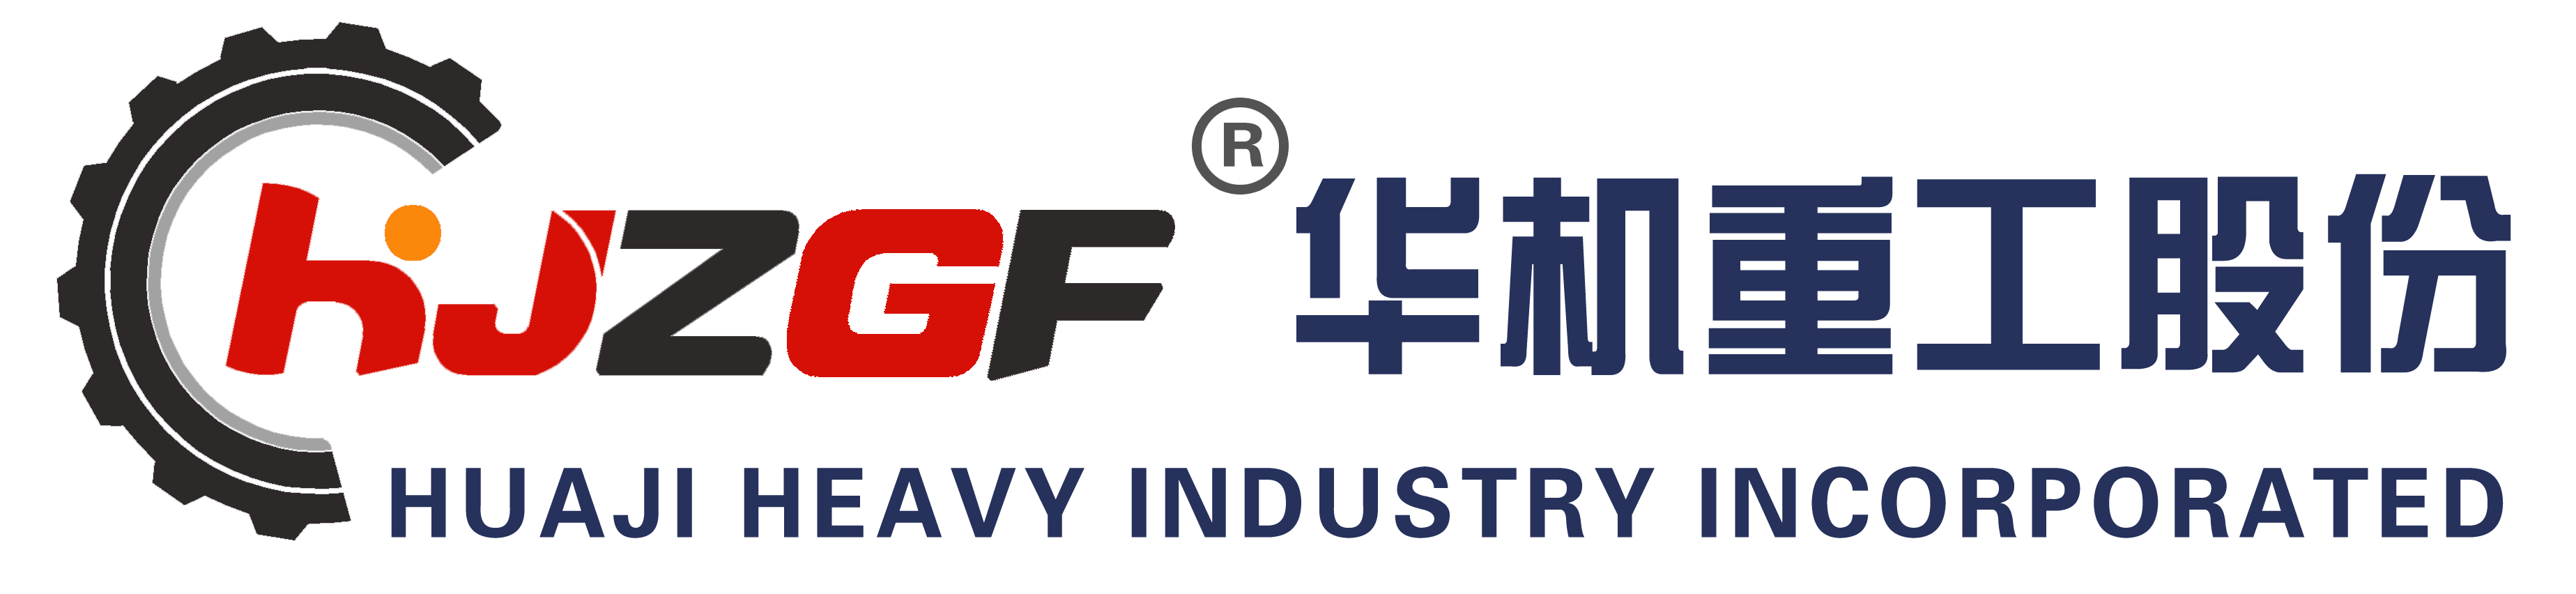 山东华机重工股份有限公司logo